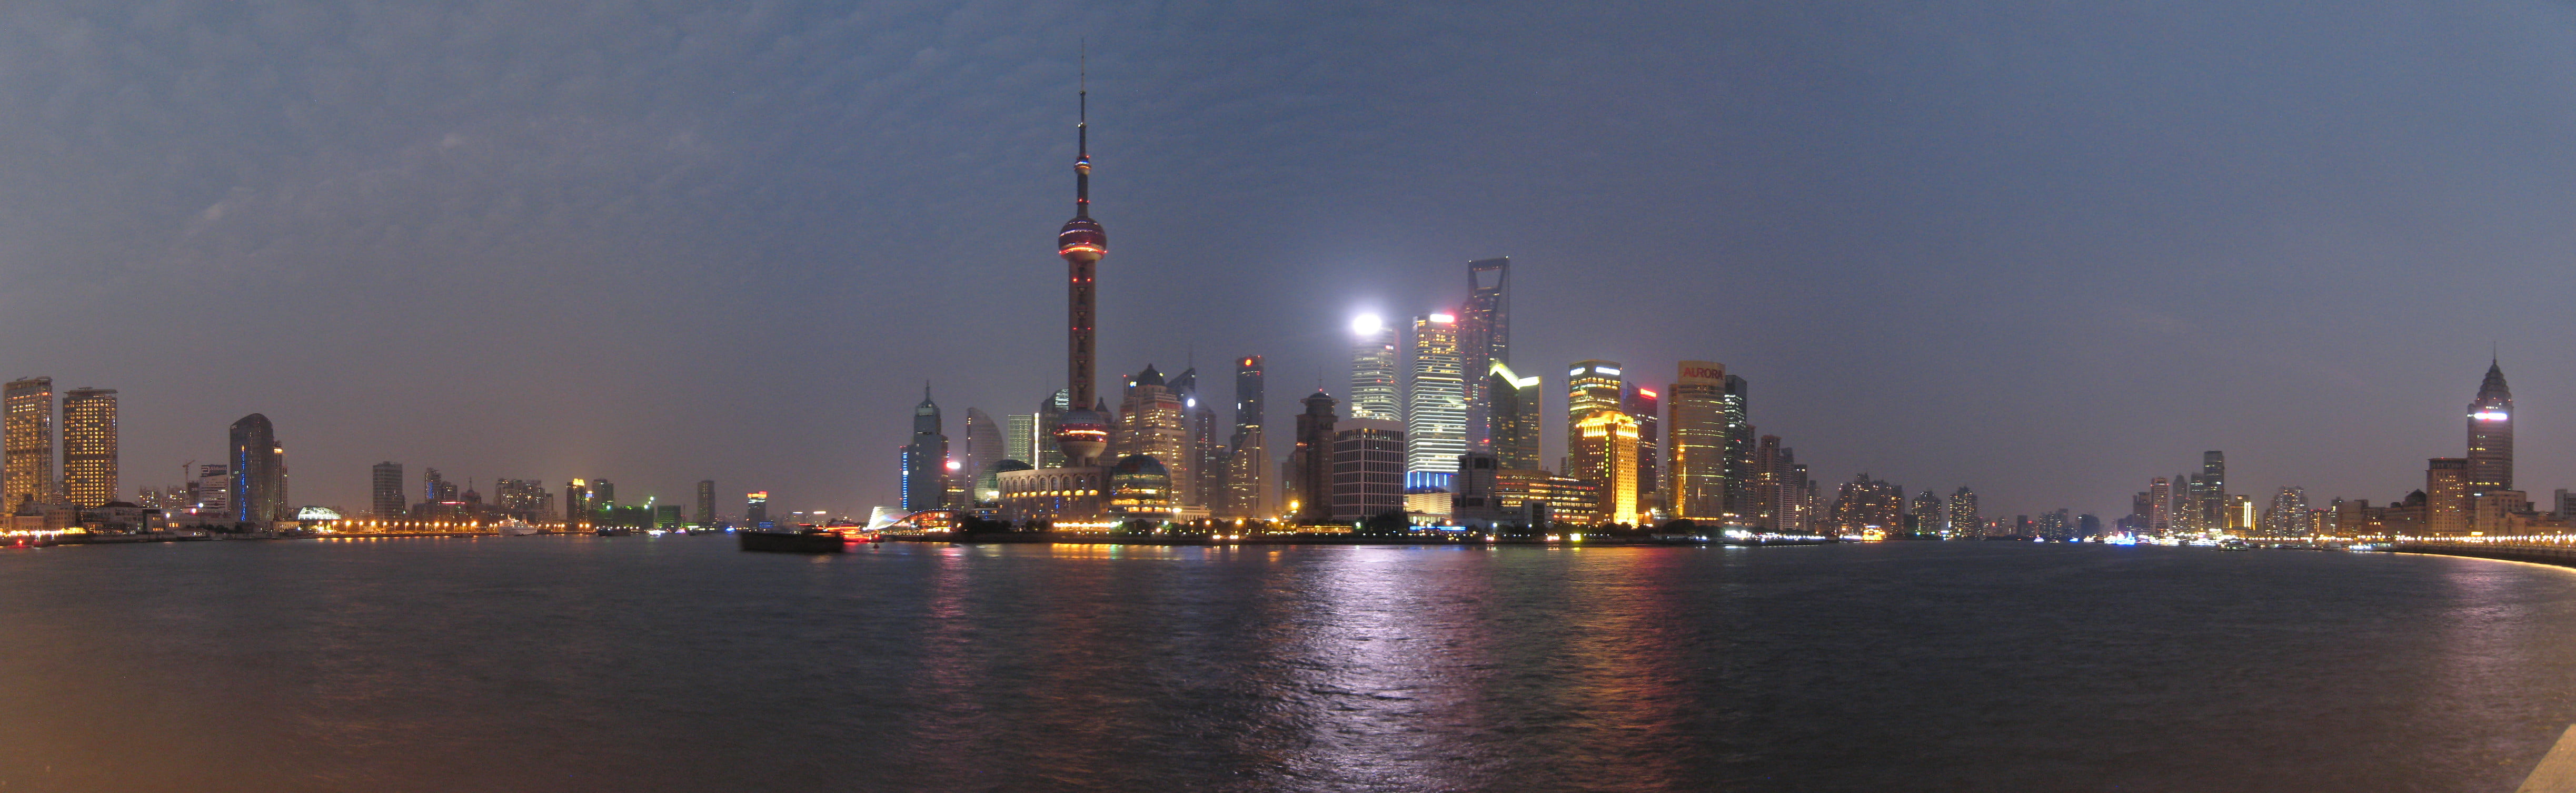 high rise building, shanghai